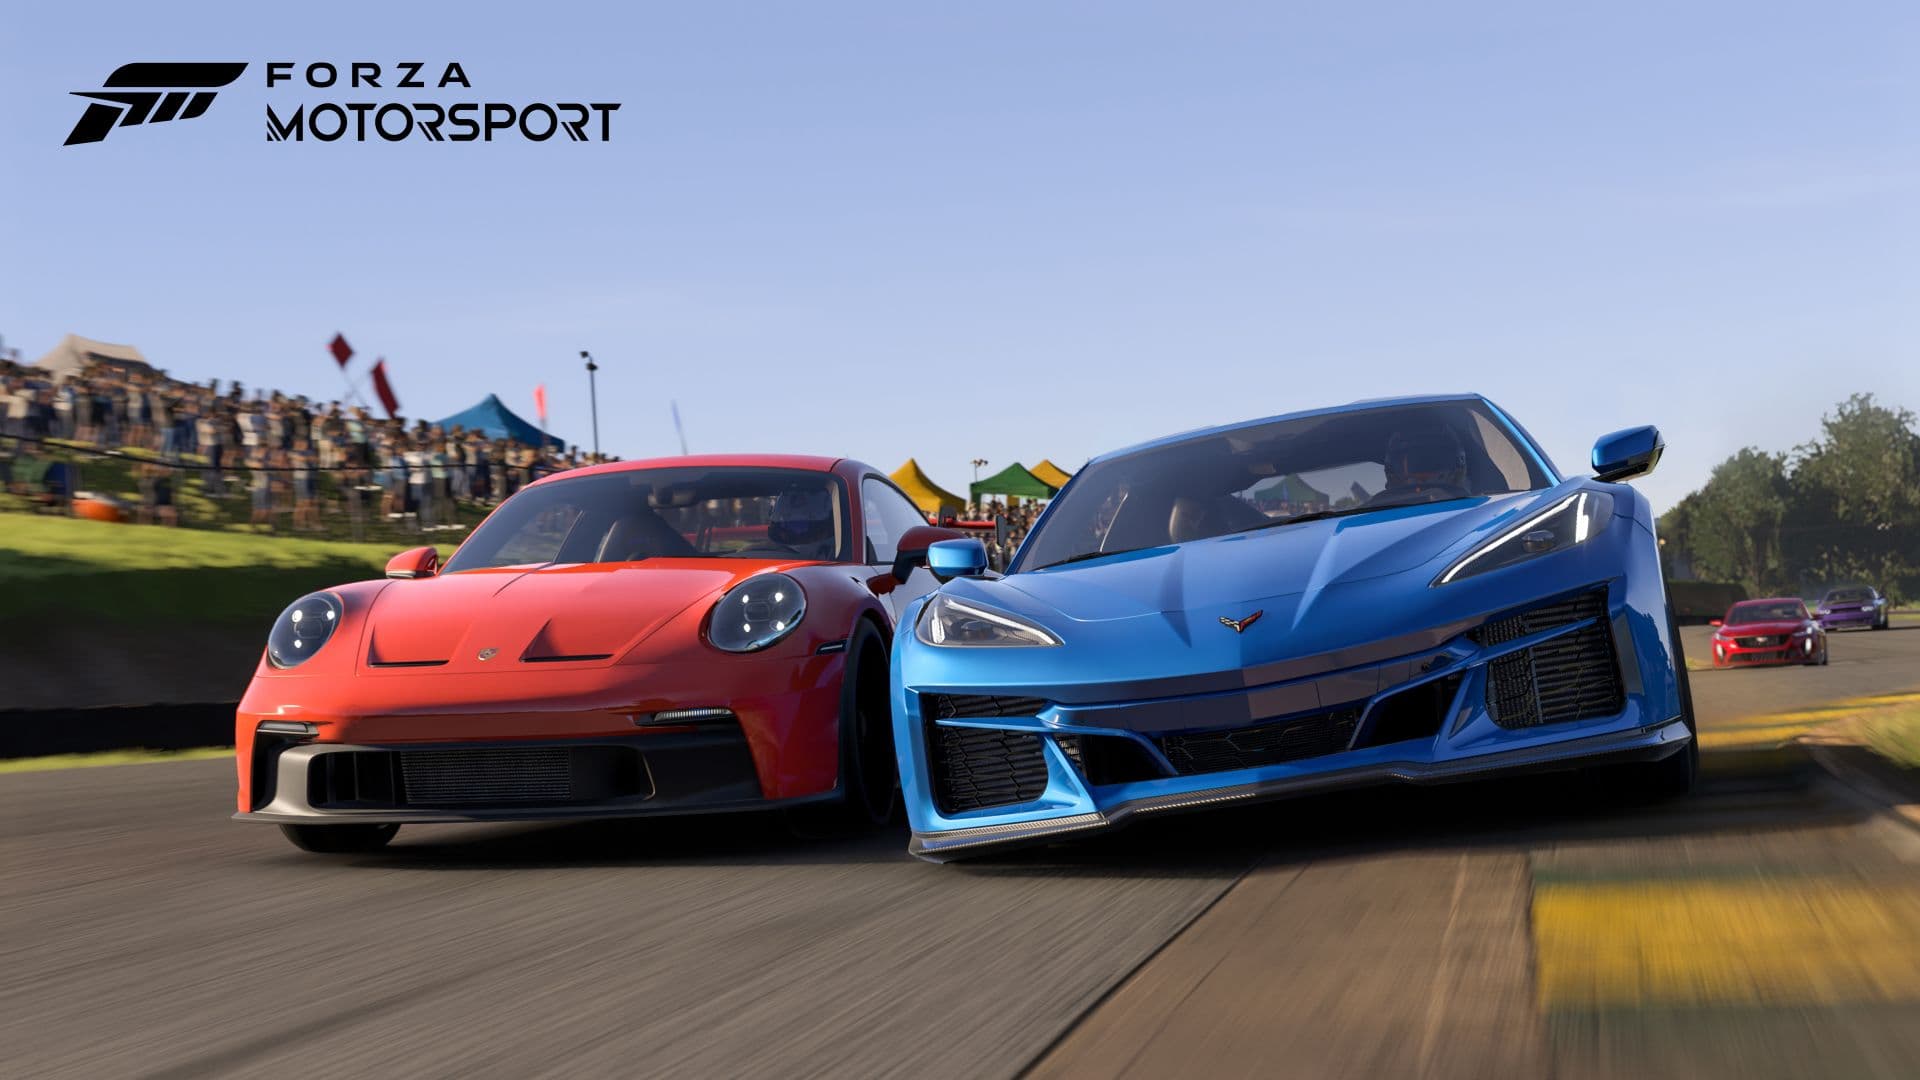 Seu PC roda Forza Motorsport? Veja requisitos e tecnologias